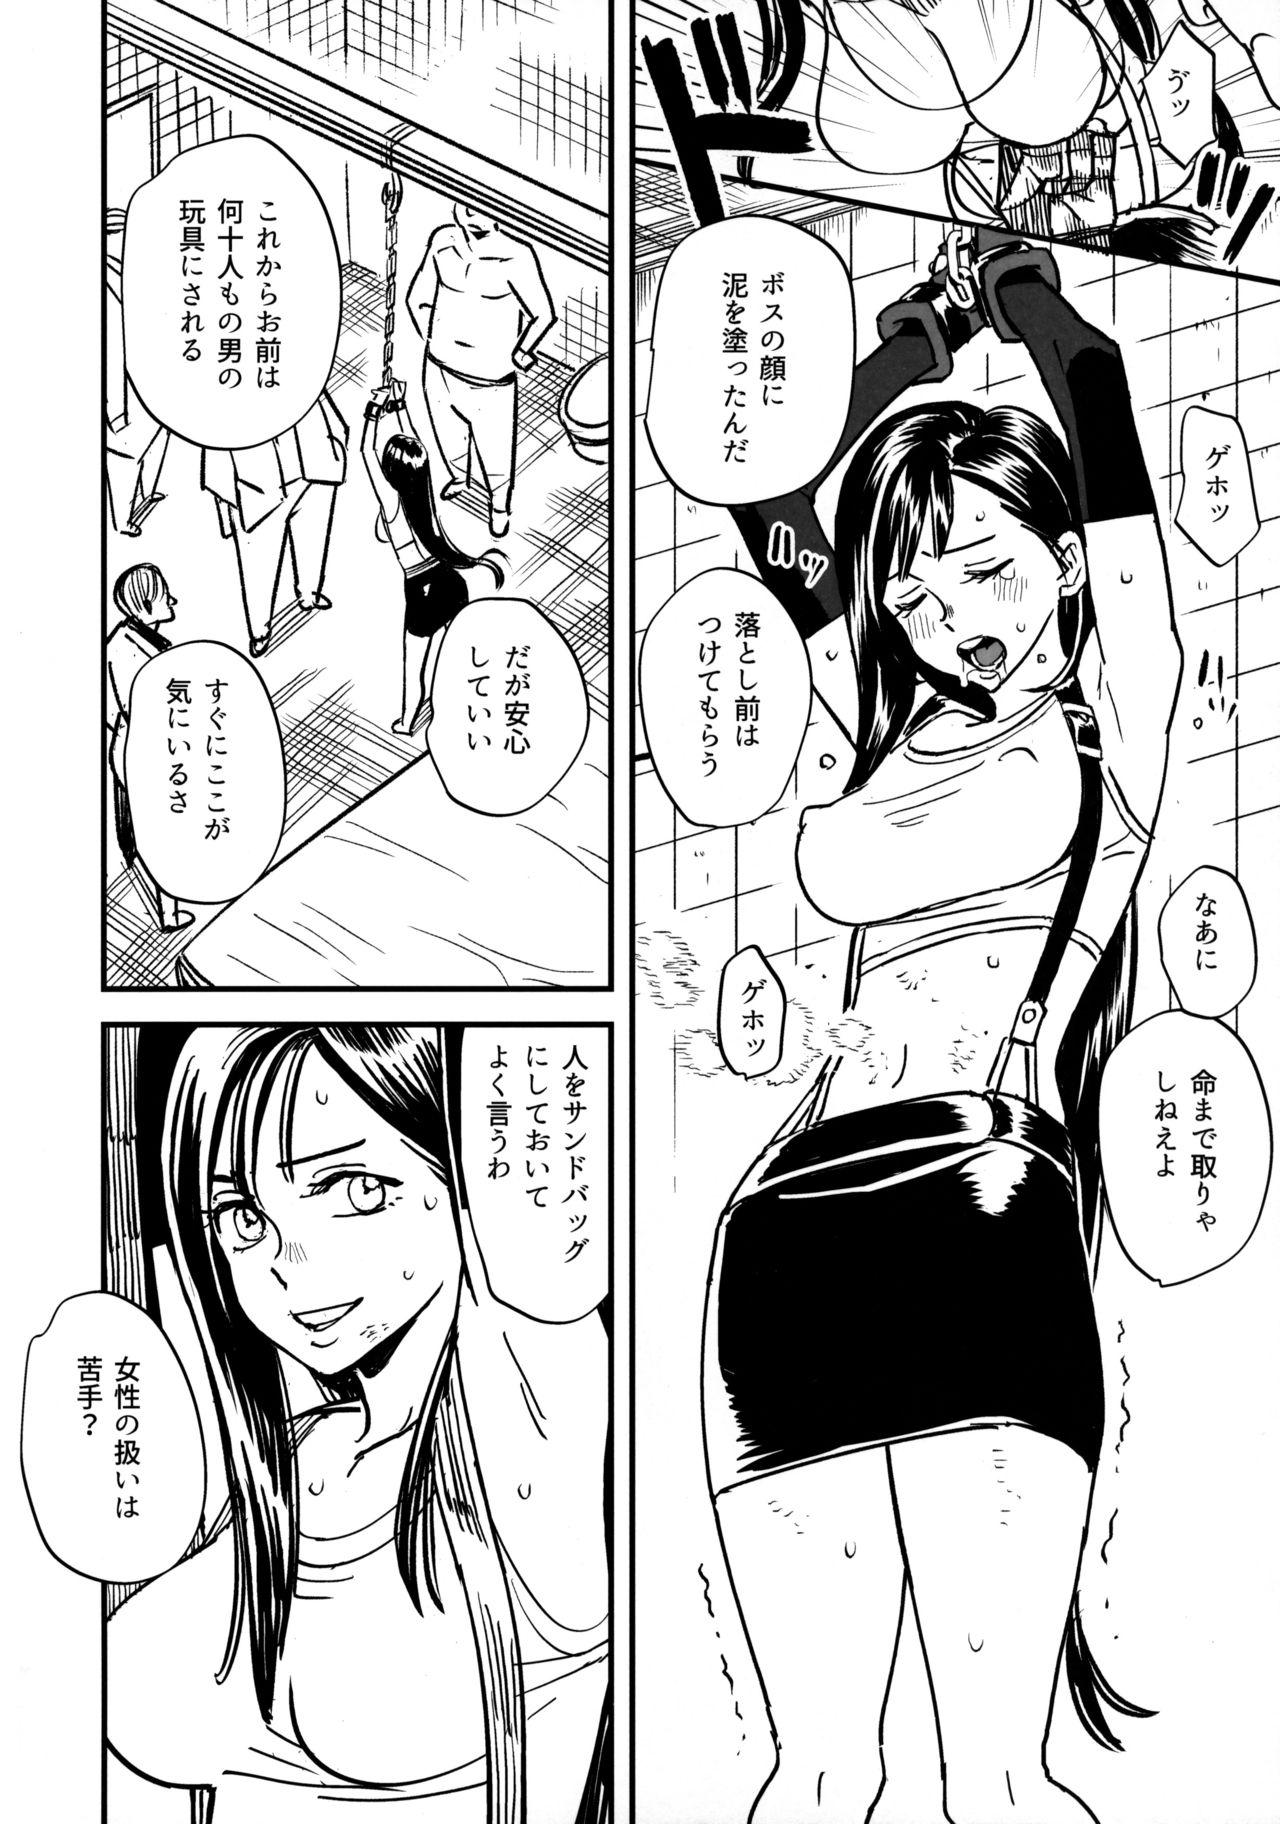 Model Mitsubachi no Yoru - Final fantasy vii Blacksonboys - Page 3